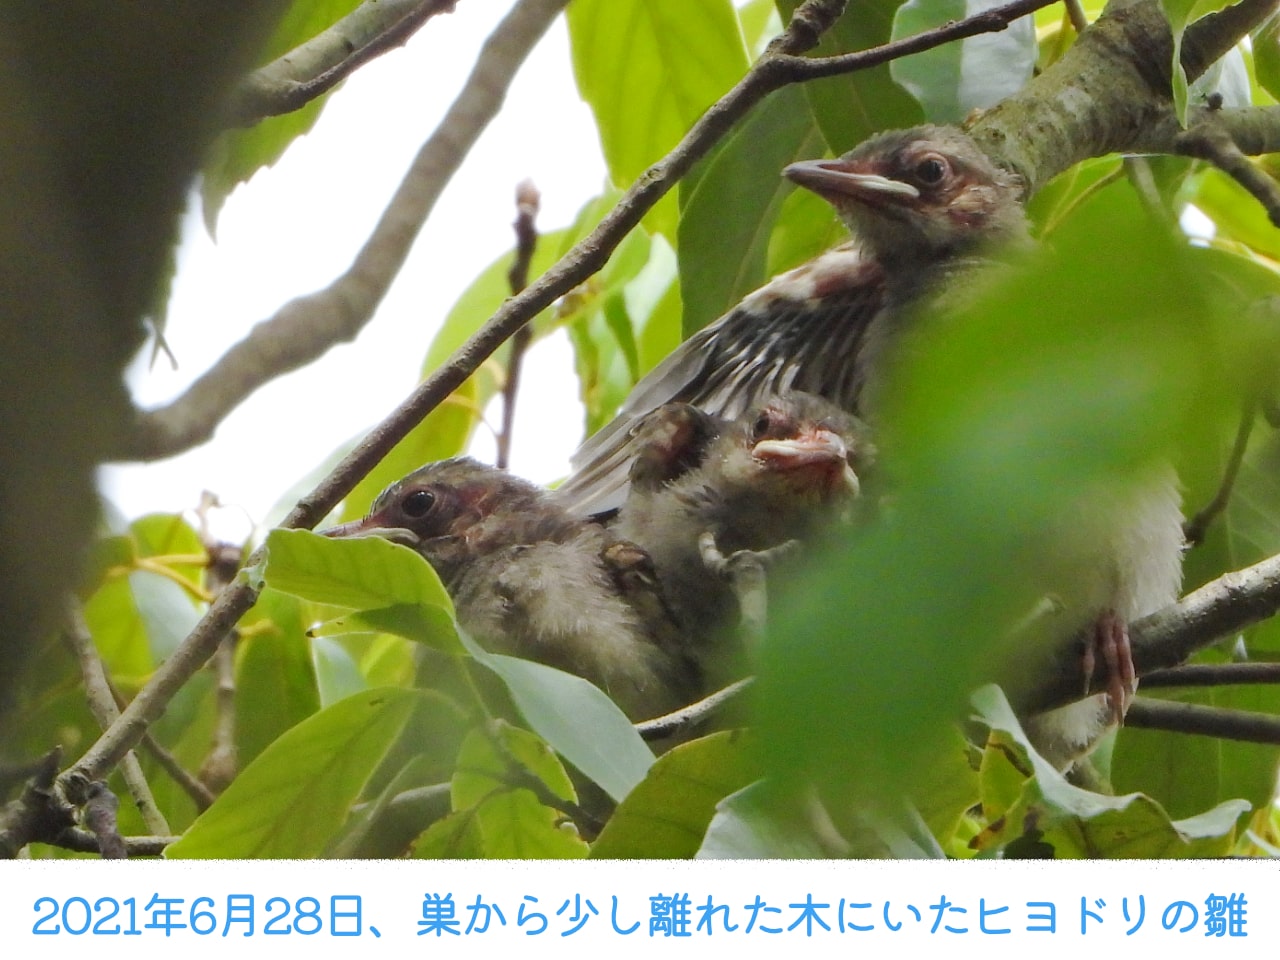 2021年6月28日、巣から少し離れた木の上にいた巣立ちから2日目のヒヨドリの雛の画像